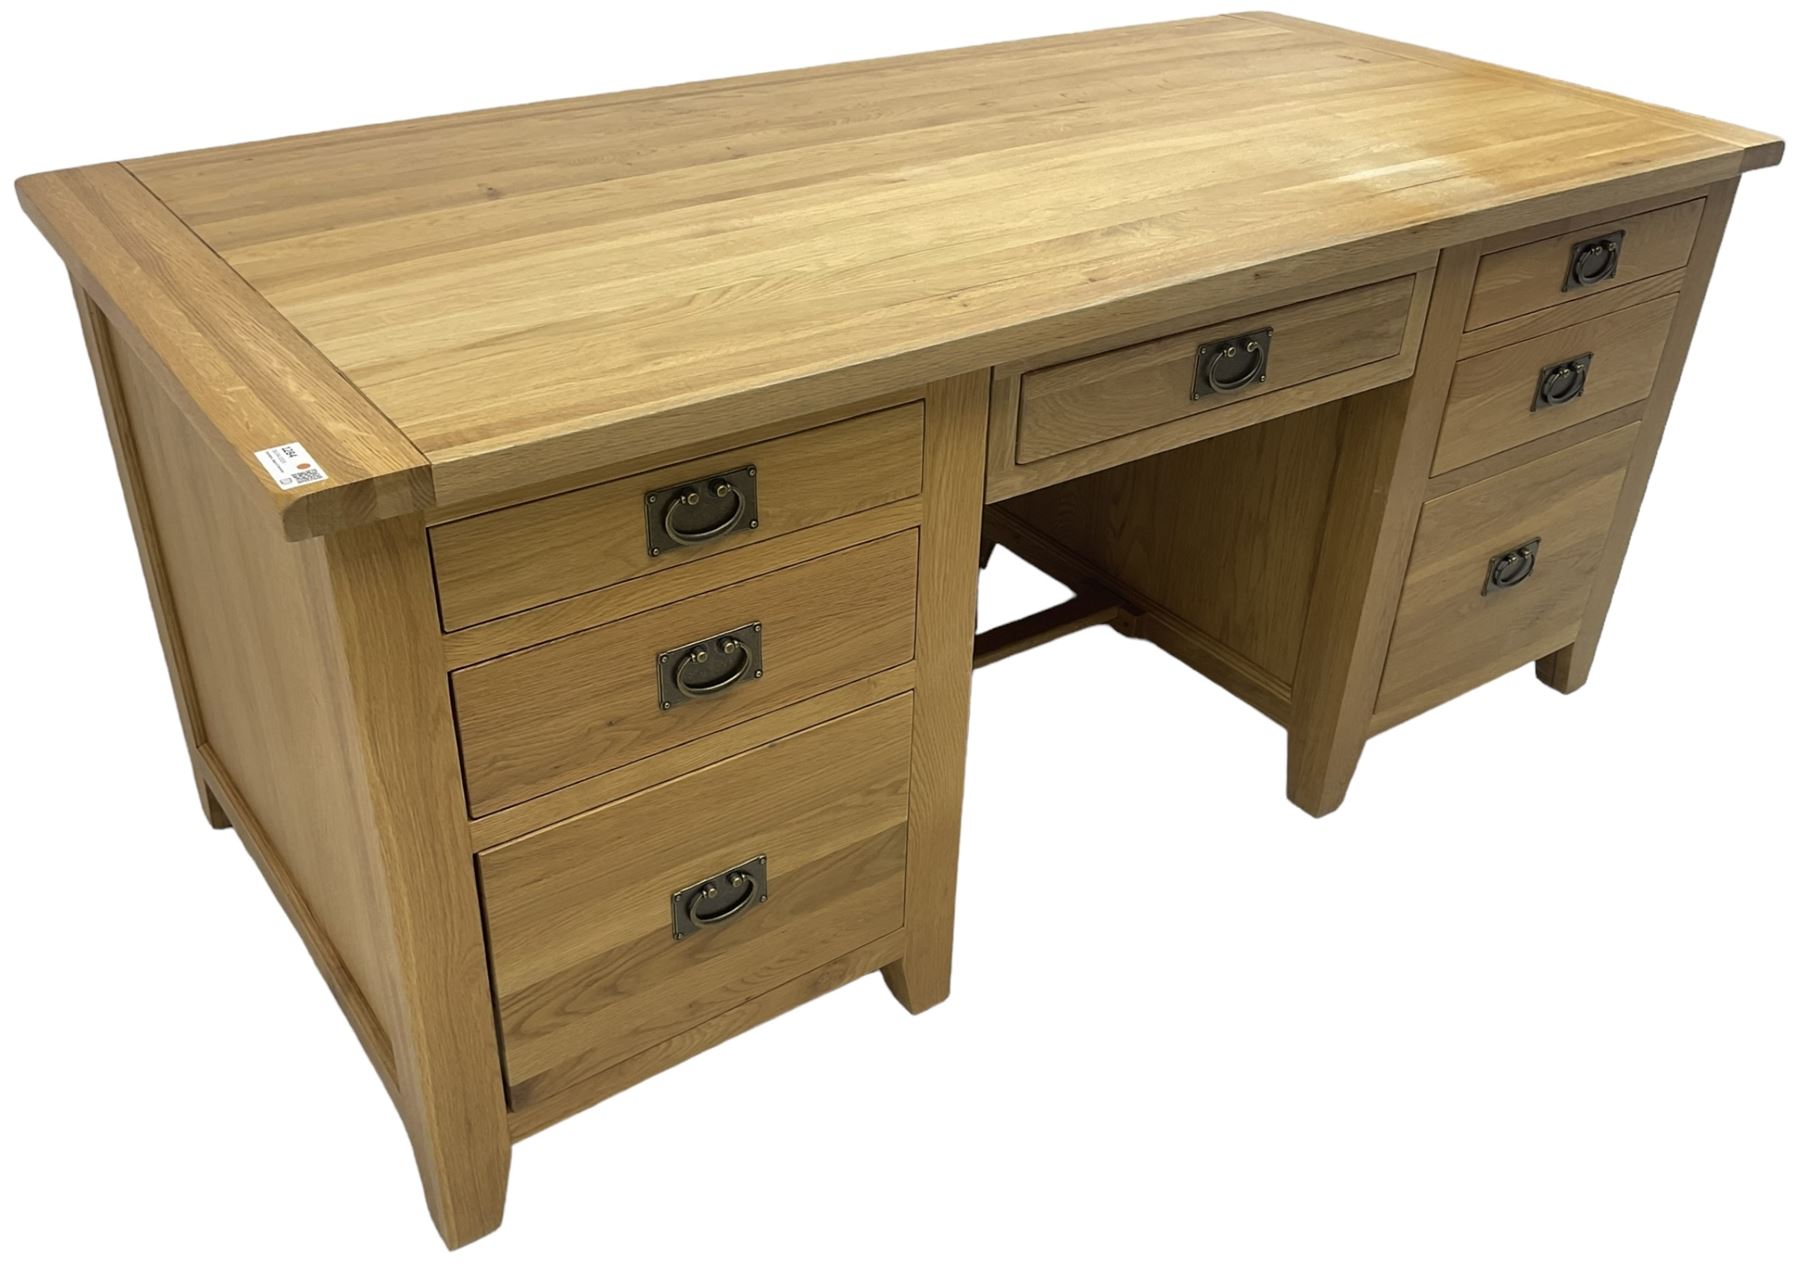 Light oak twin pedestal desk - Image 4 of 6